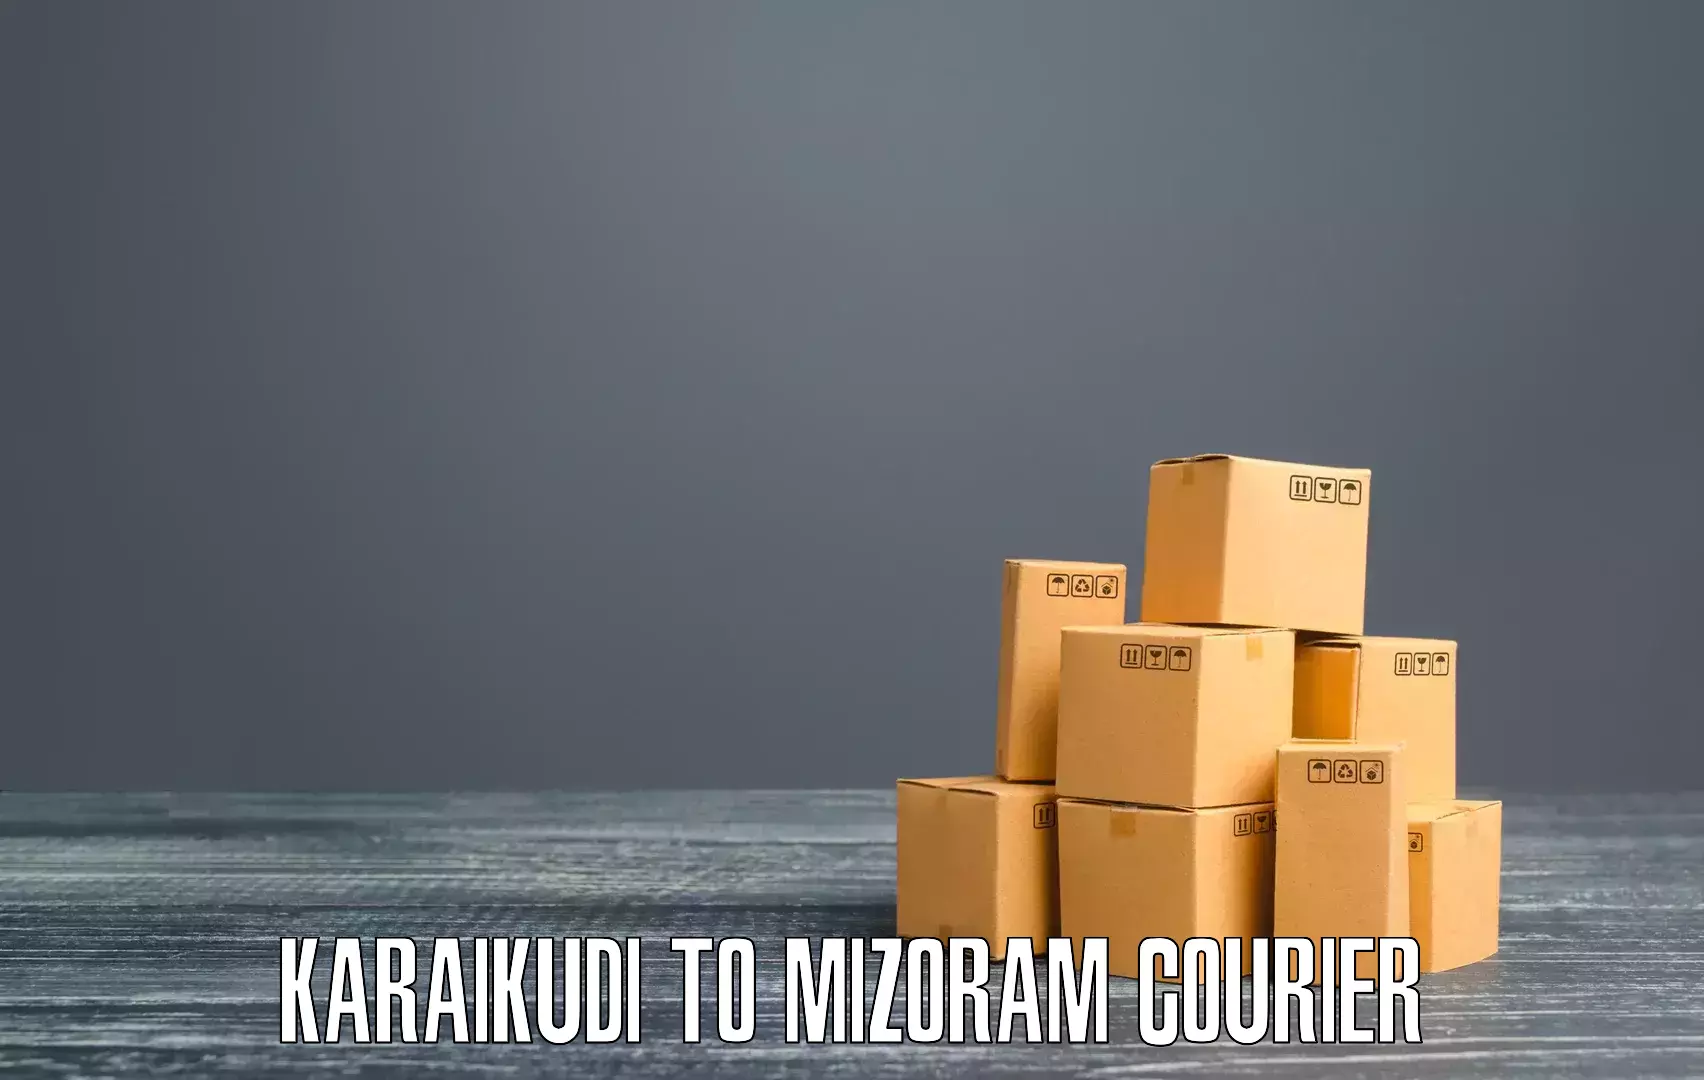 Multi-carrier shipping Karaikudi to Mizoram